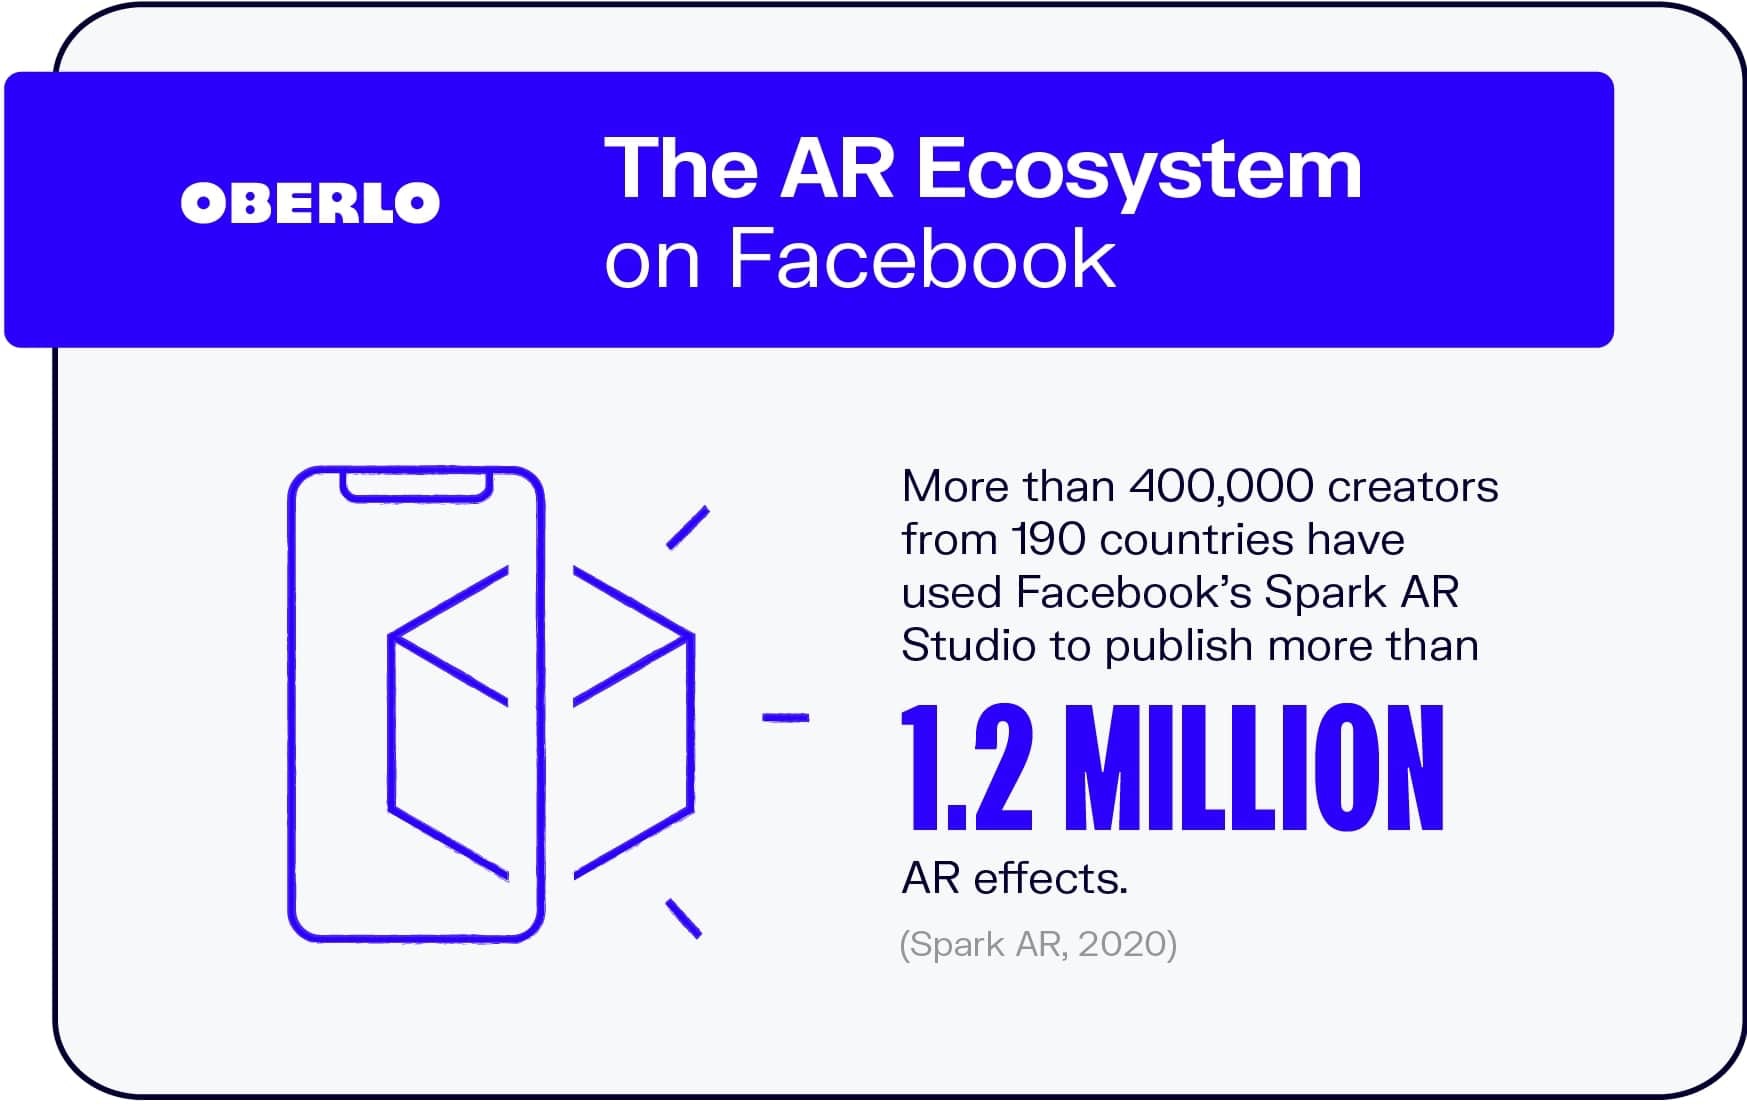 El ecosistema AR en Facebook